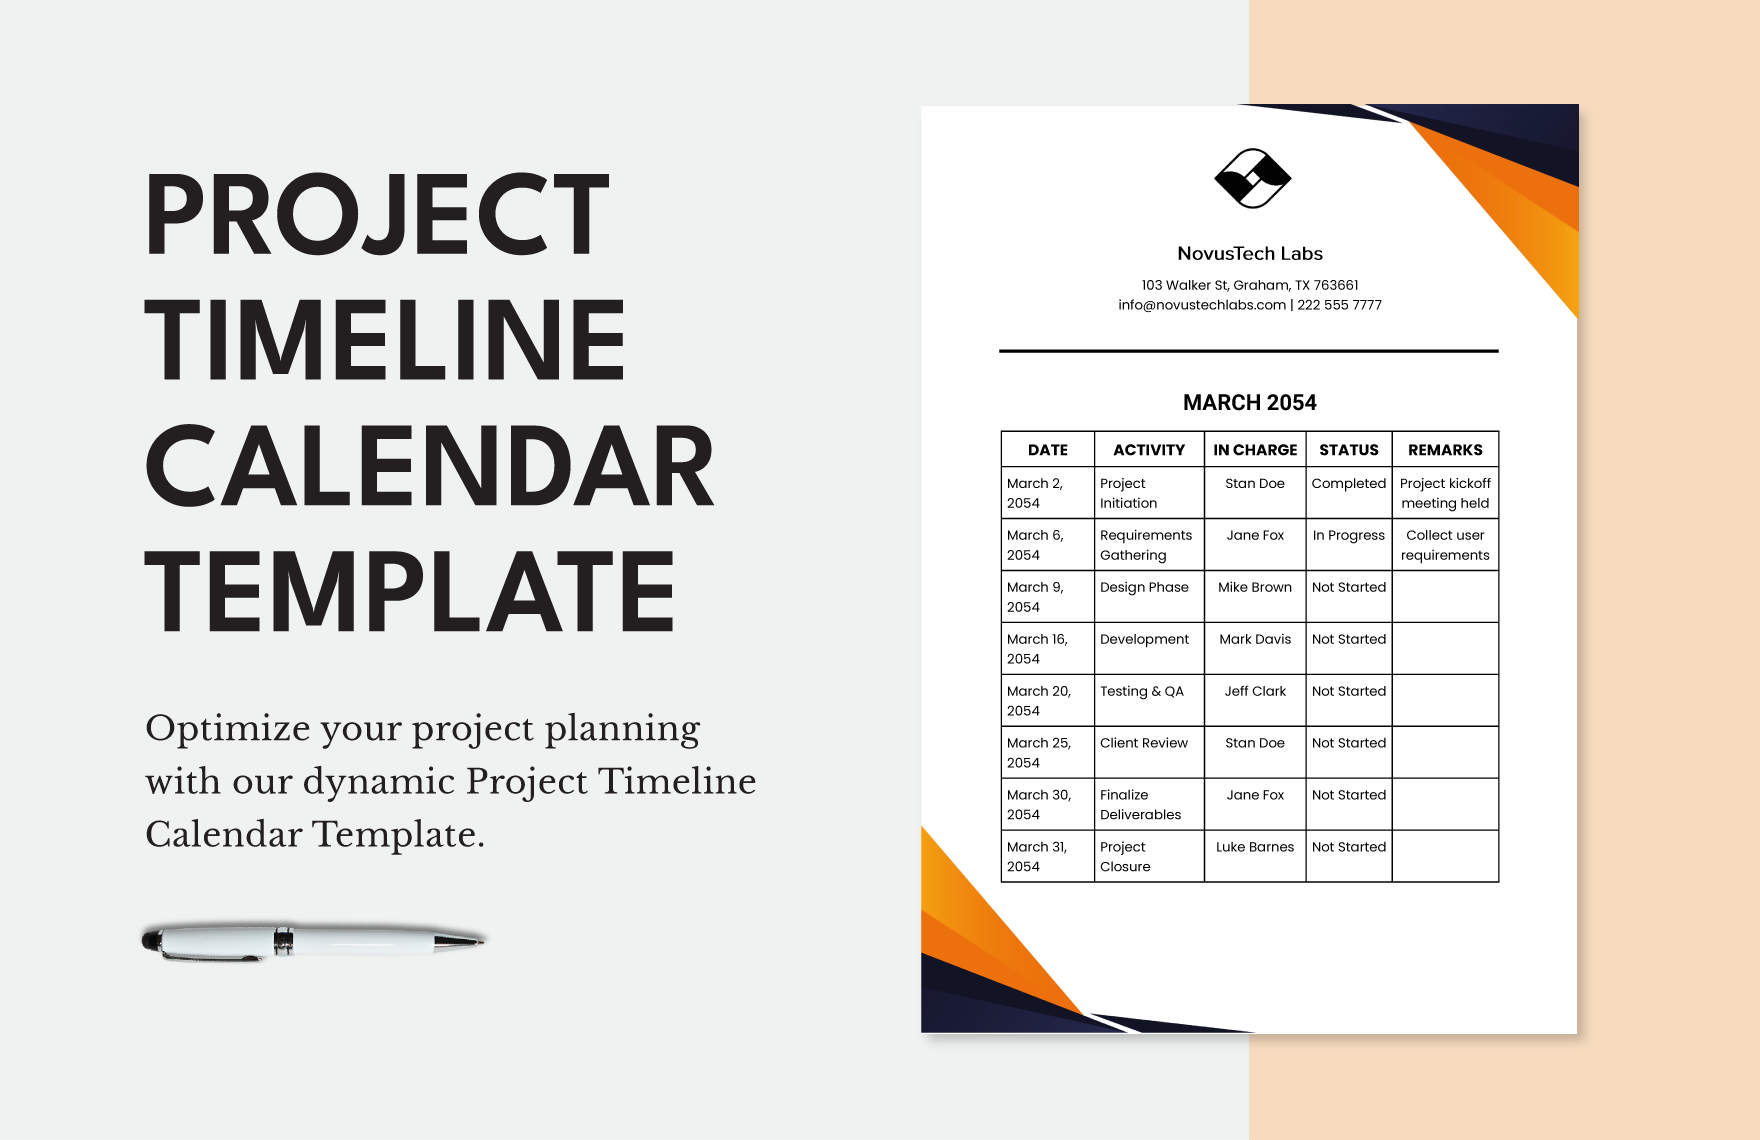 Project Timeline Calendar Template